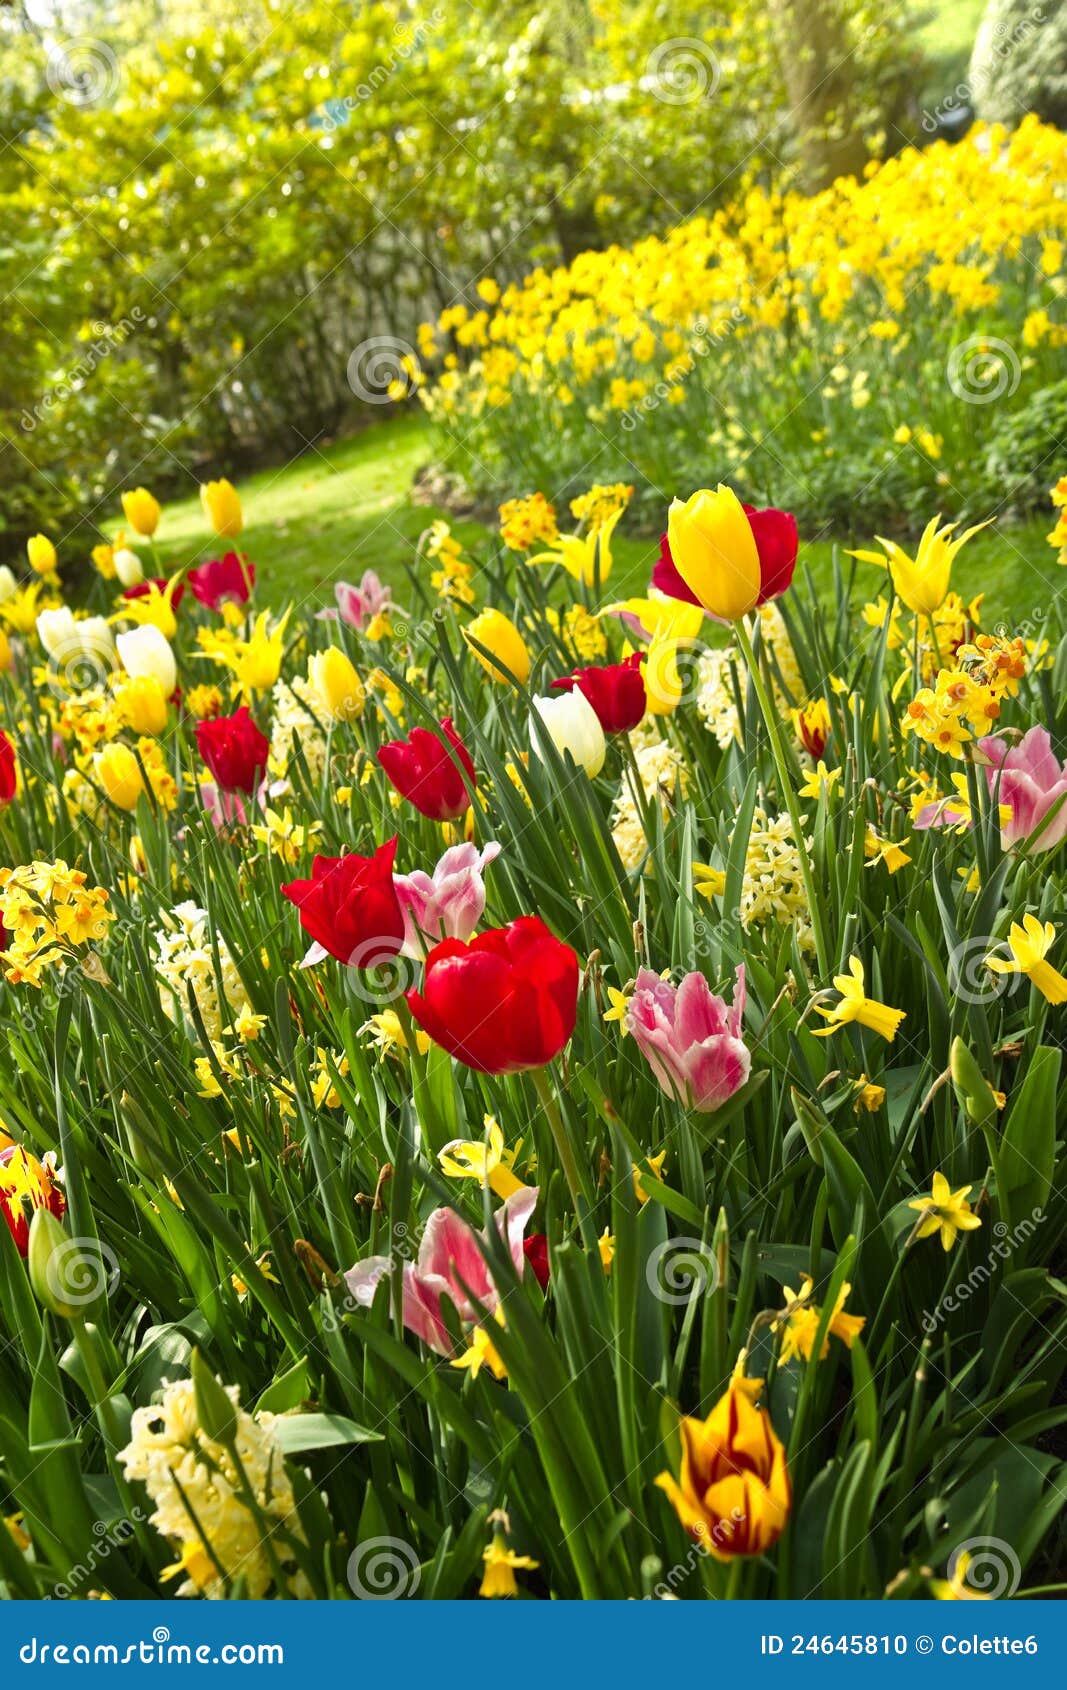 Tulipes Et Jonquilles Dans Un Bon Nombre De Couleurs Au Printemps Photo  stock - Image du ampoules, fleur: 24645810